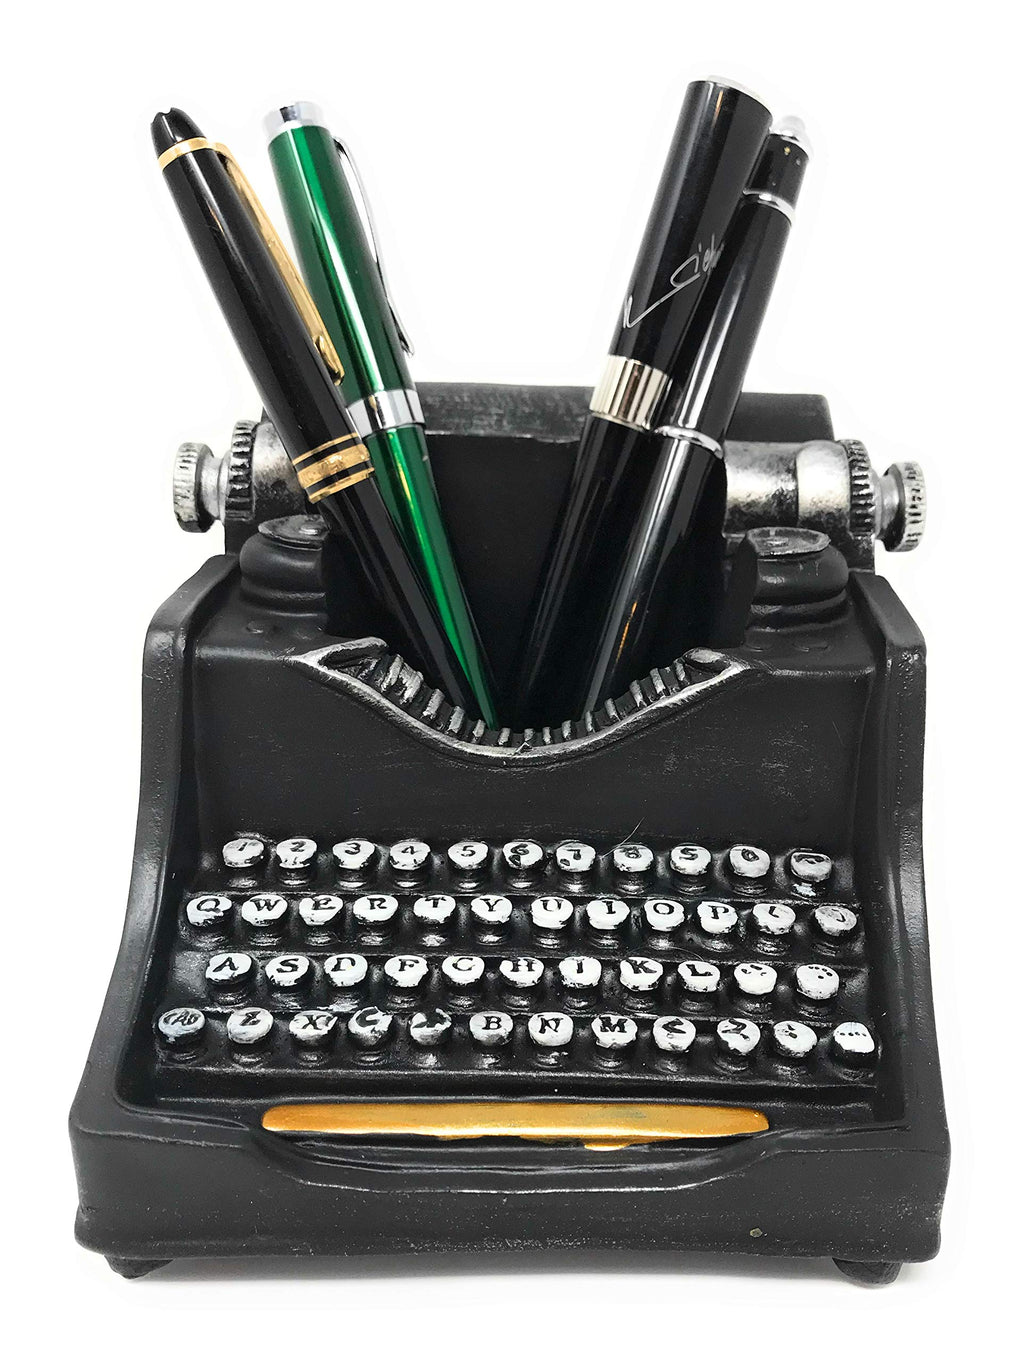 Retro/Shabby Chic/Vintage Typewriter Pencil Holder for Desk/Desk Organizer for Writer's Desk- Nostalgic Gift for Writers/Gift for Vintage Lovers/Gift for Typewriter Lovers - LeoForward Australia